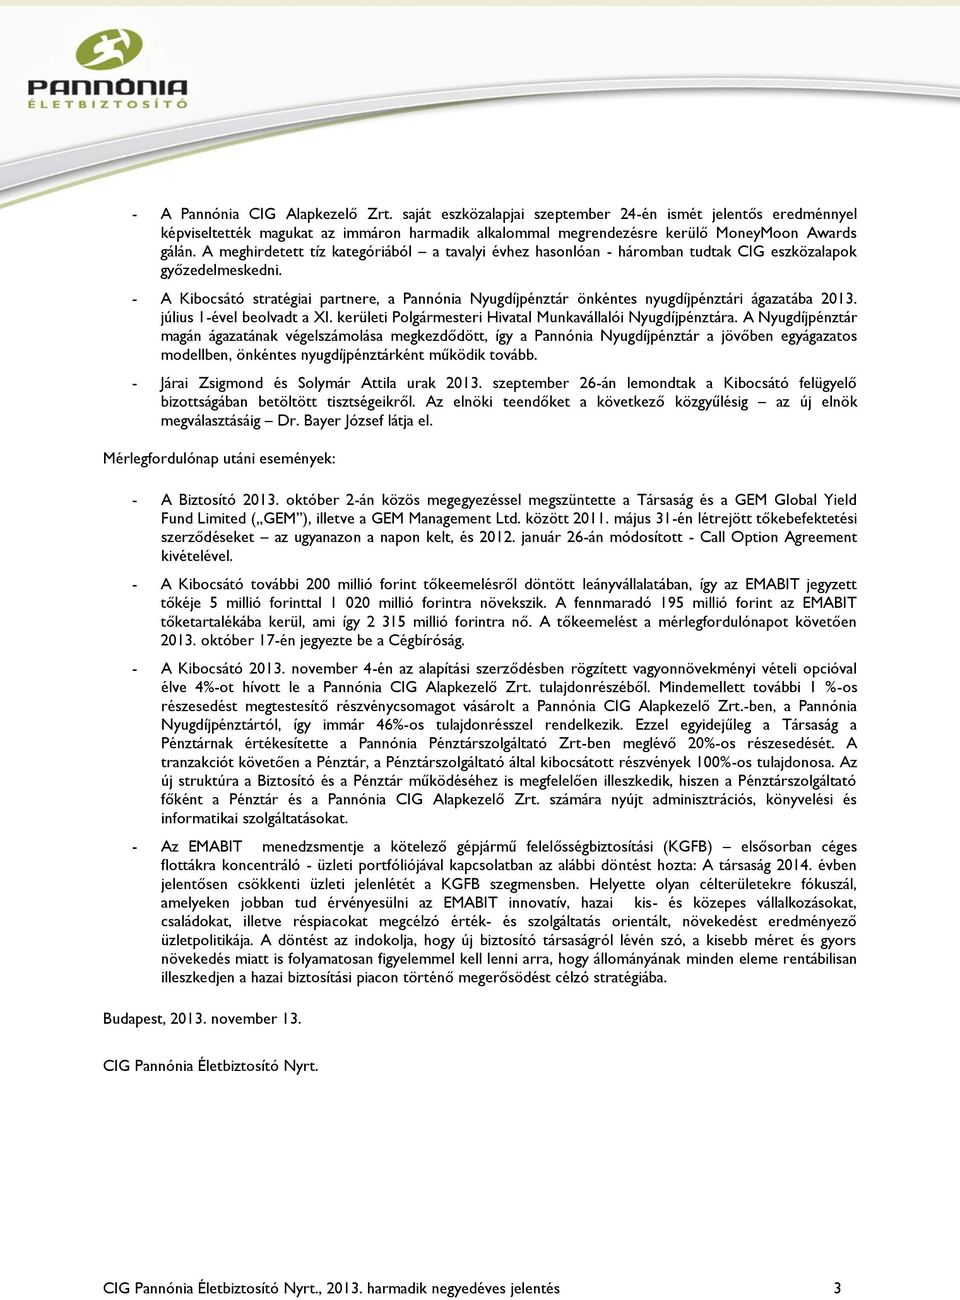 - A Kibocsátó stratégiai partnere, a Pannónia Nyugdíjpénztár önkéntes nyugdíjpénztári ágazatába 2013. július 1-ével beolvadt a XI. kerületi Polgármesteri Hivatal Munkavállalói Nyugdíjpénztára.